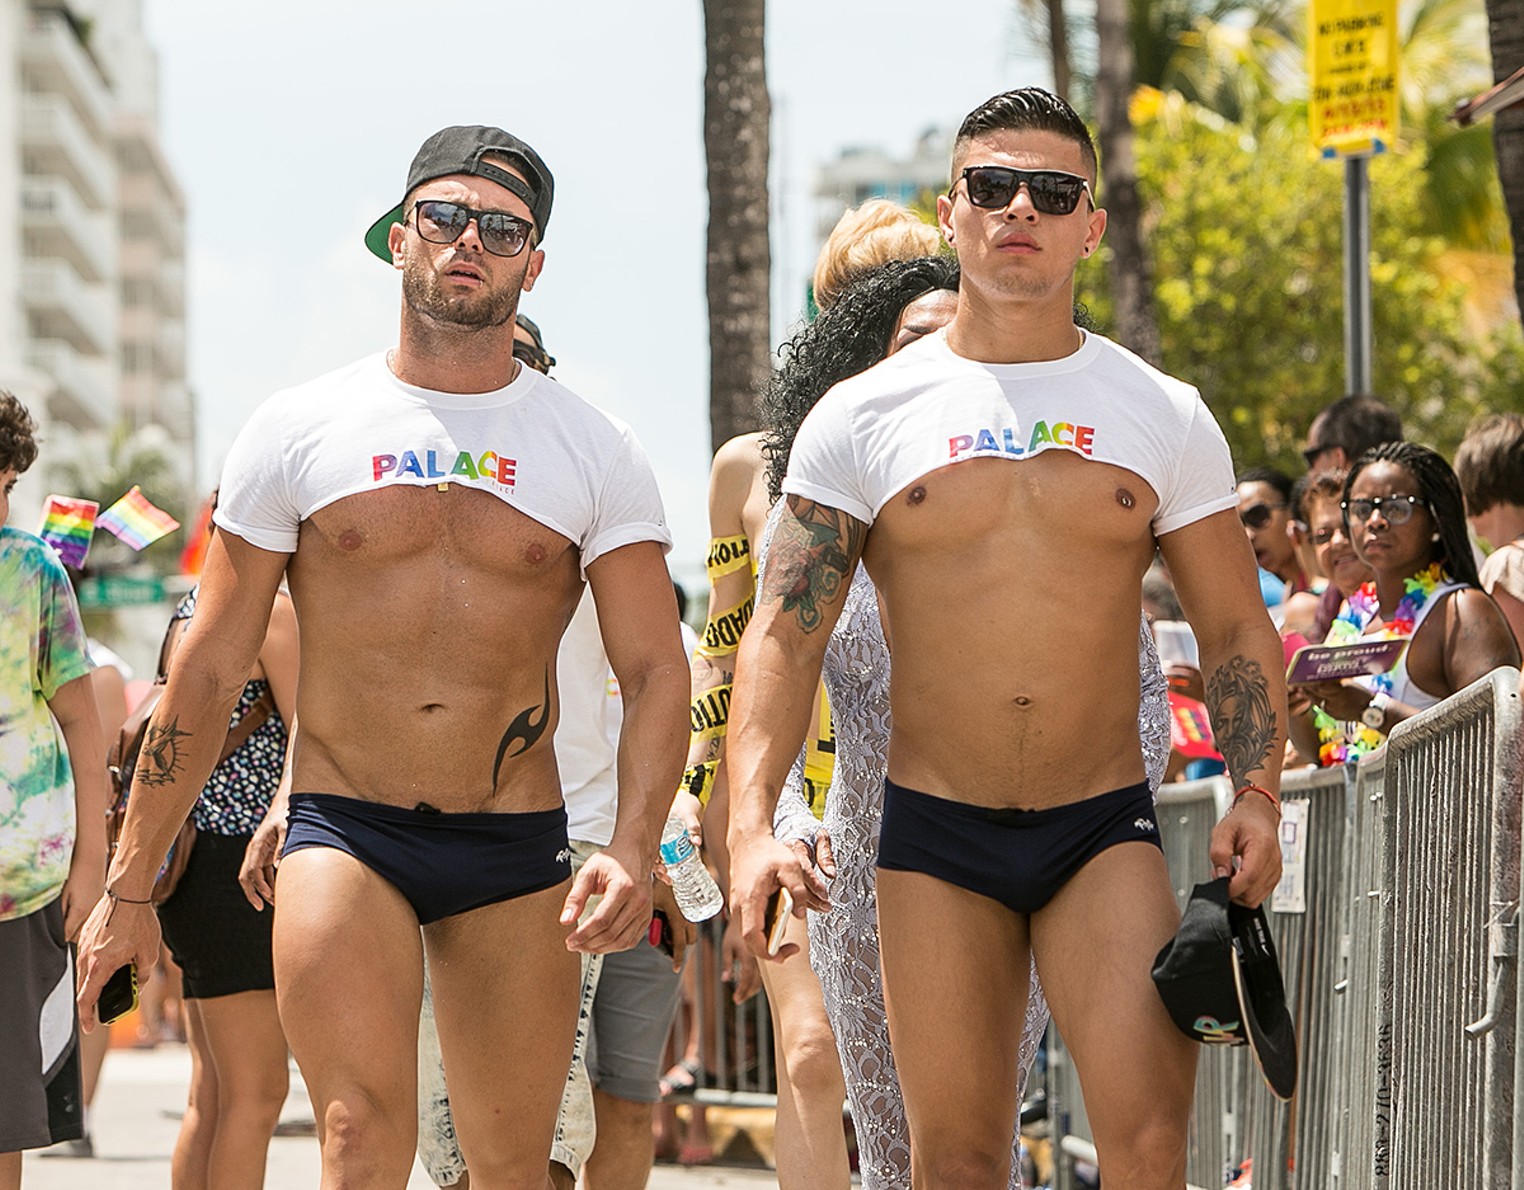 gay pride miami 2015 date